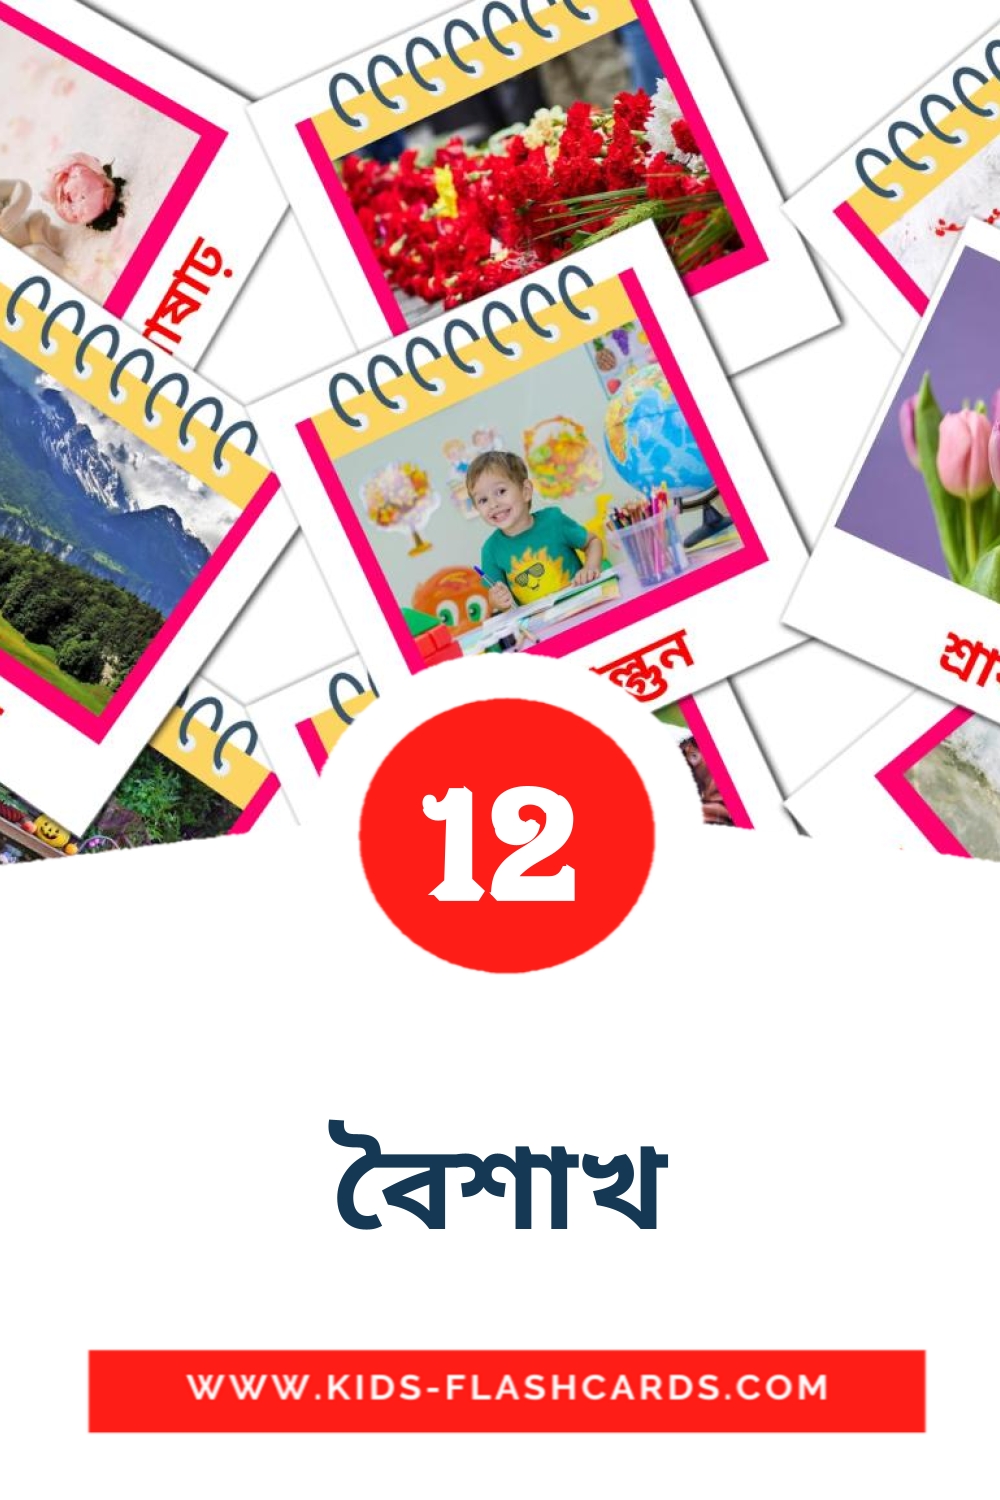 12 tarjetas didacticas de বৈশাখ para el jardín de infancia en bengalí